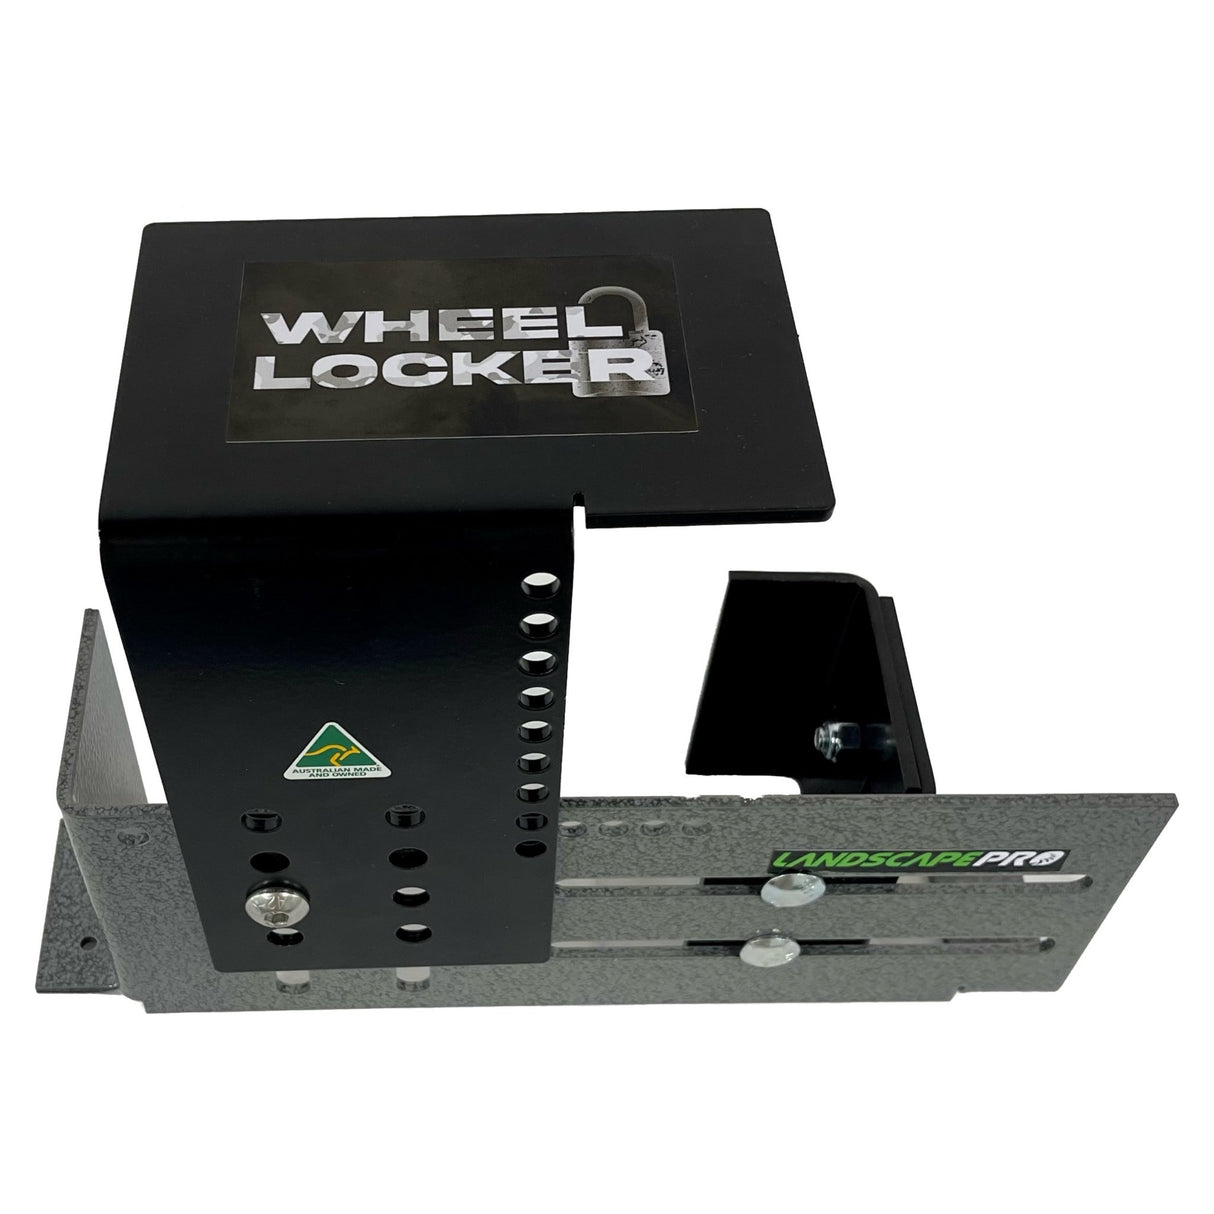 Landscape Pro - Wheel Locker - Catch Pro Australia